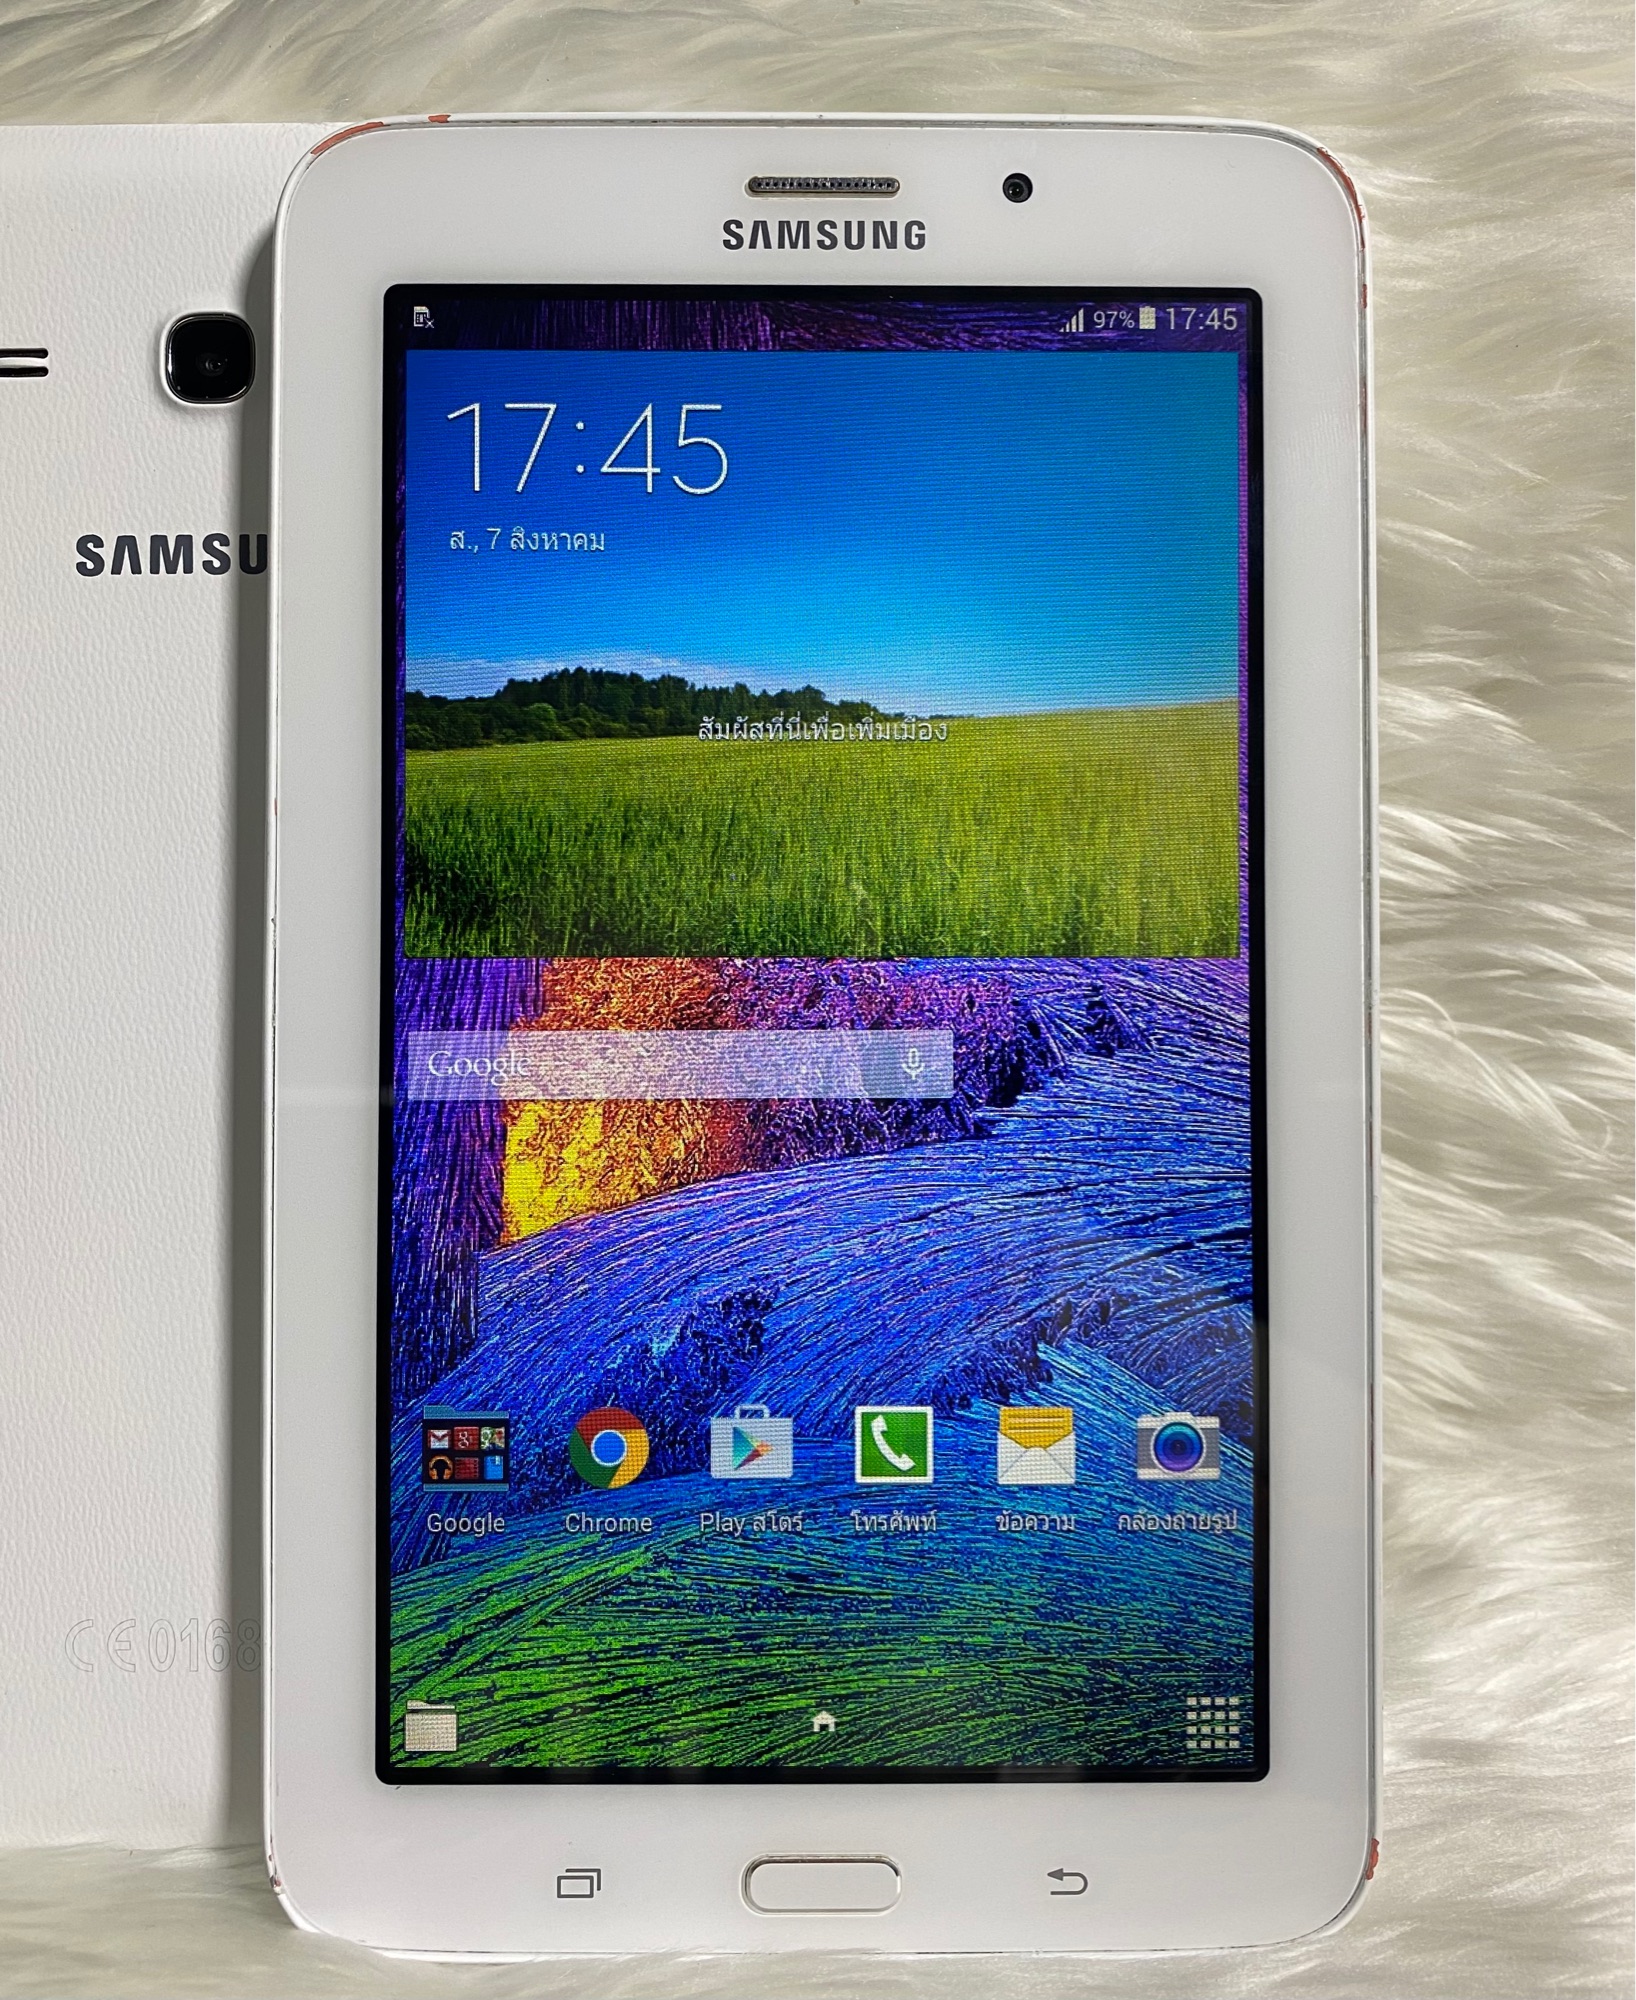 ข้อมูลเกี่ยวกับ Samsung Galaxy Tab 3E แท็บเล็ตมือ-2พร้อมใช้งานเครื่อง​ไม่มีที่ปิดซิม(ฟรีชุดชาร์จ)